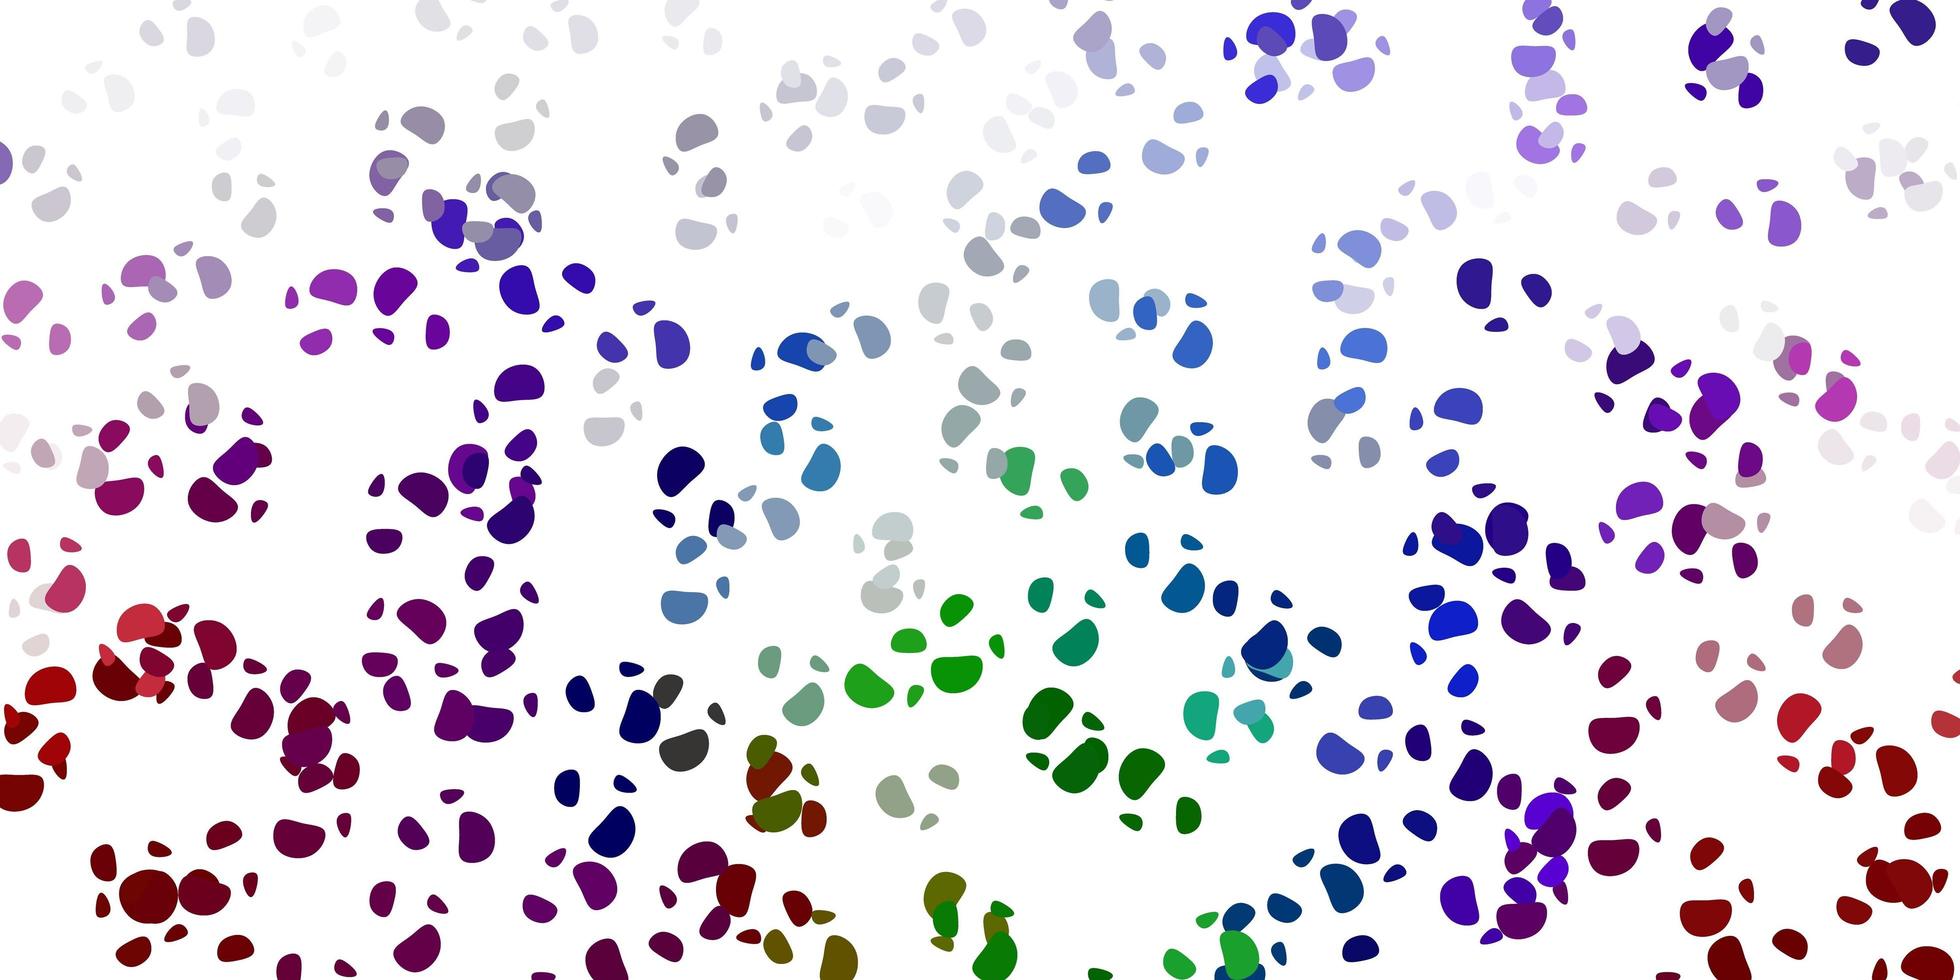 sfondo vettoriale multicolore chiaro con forme casuali.